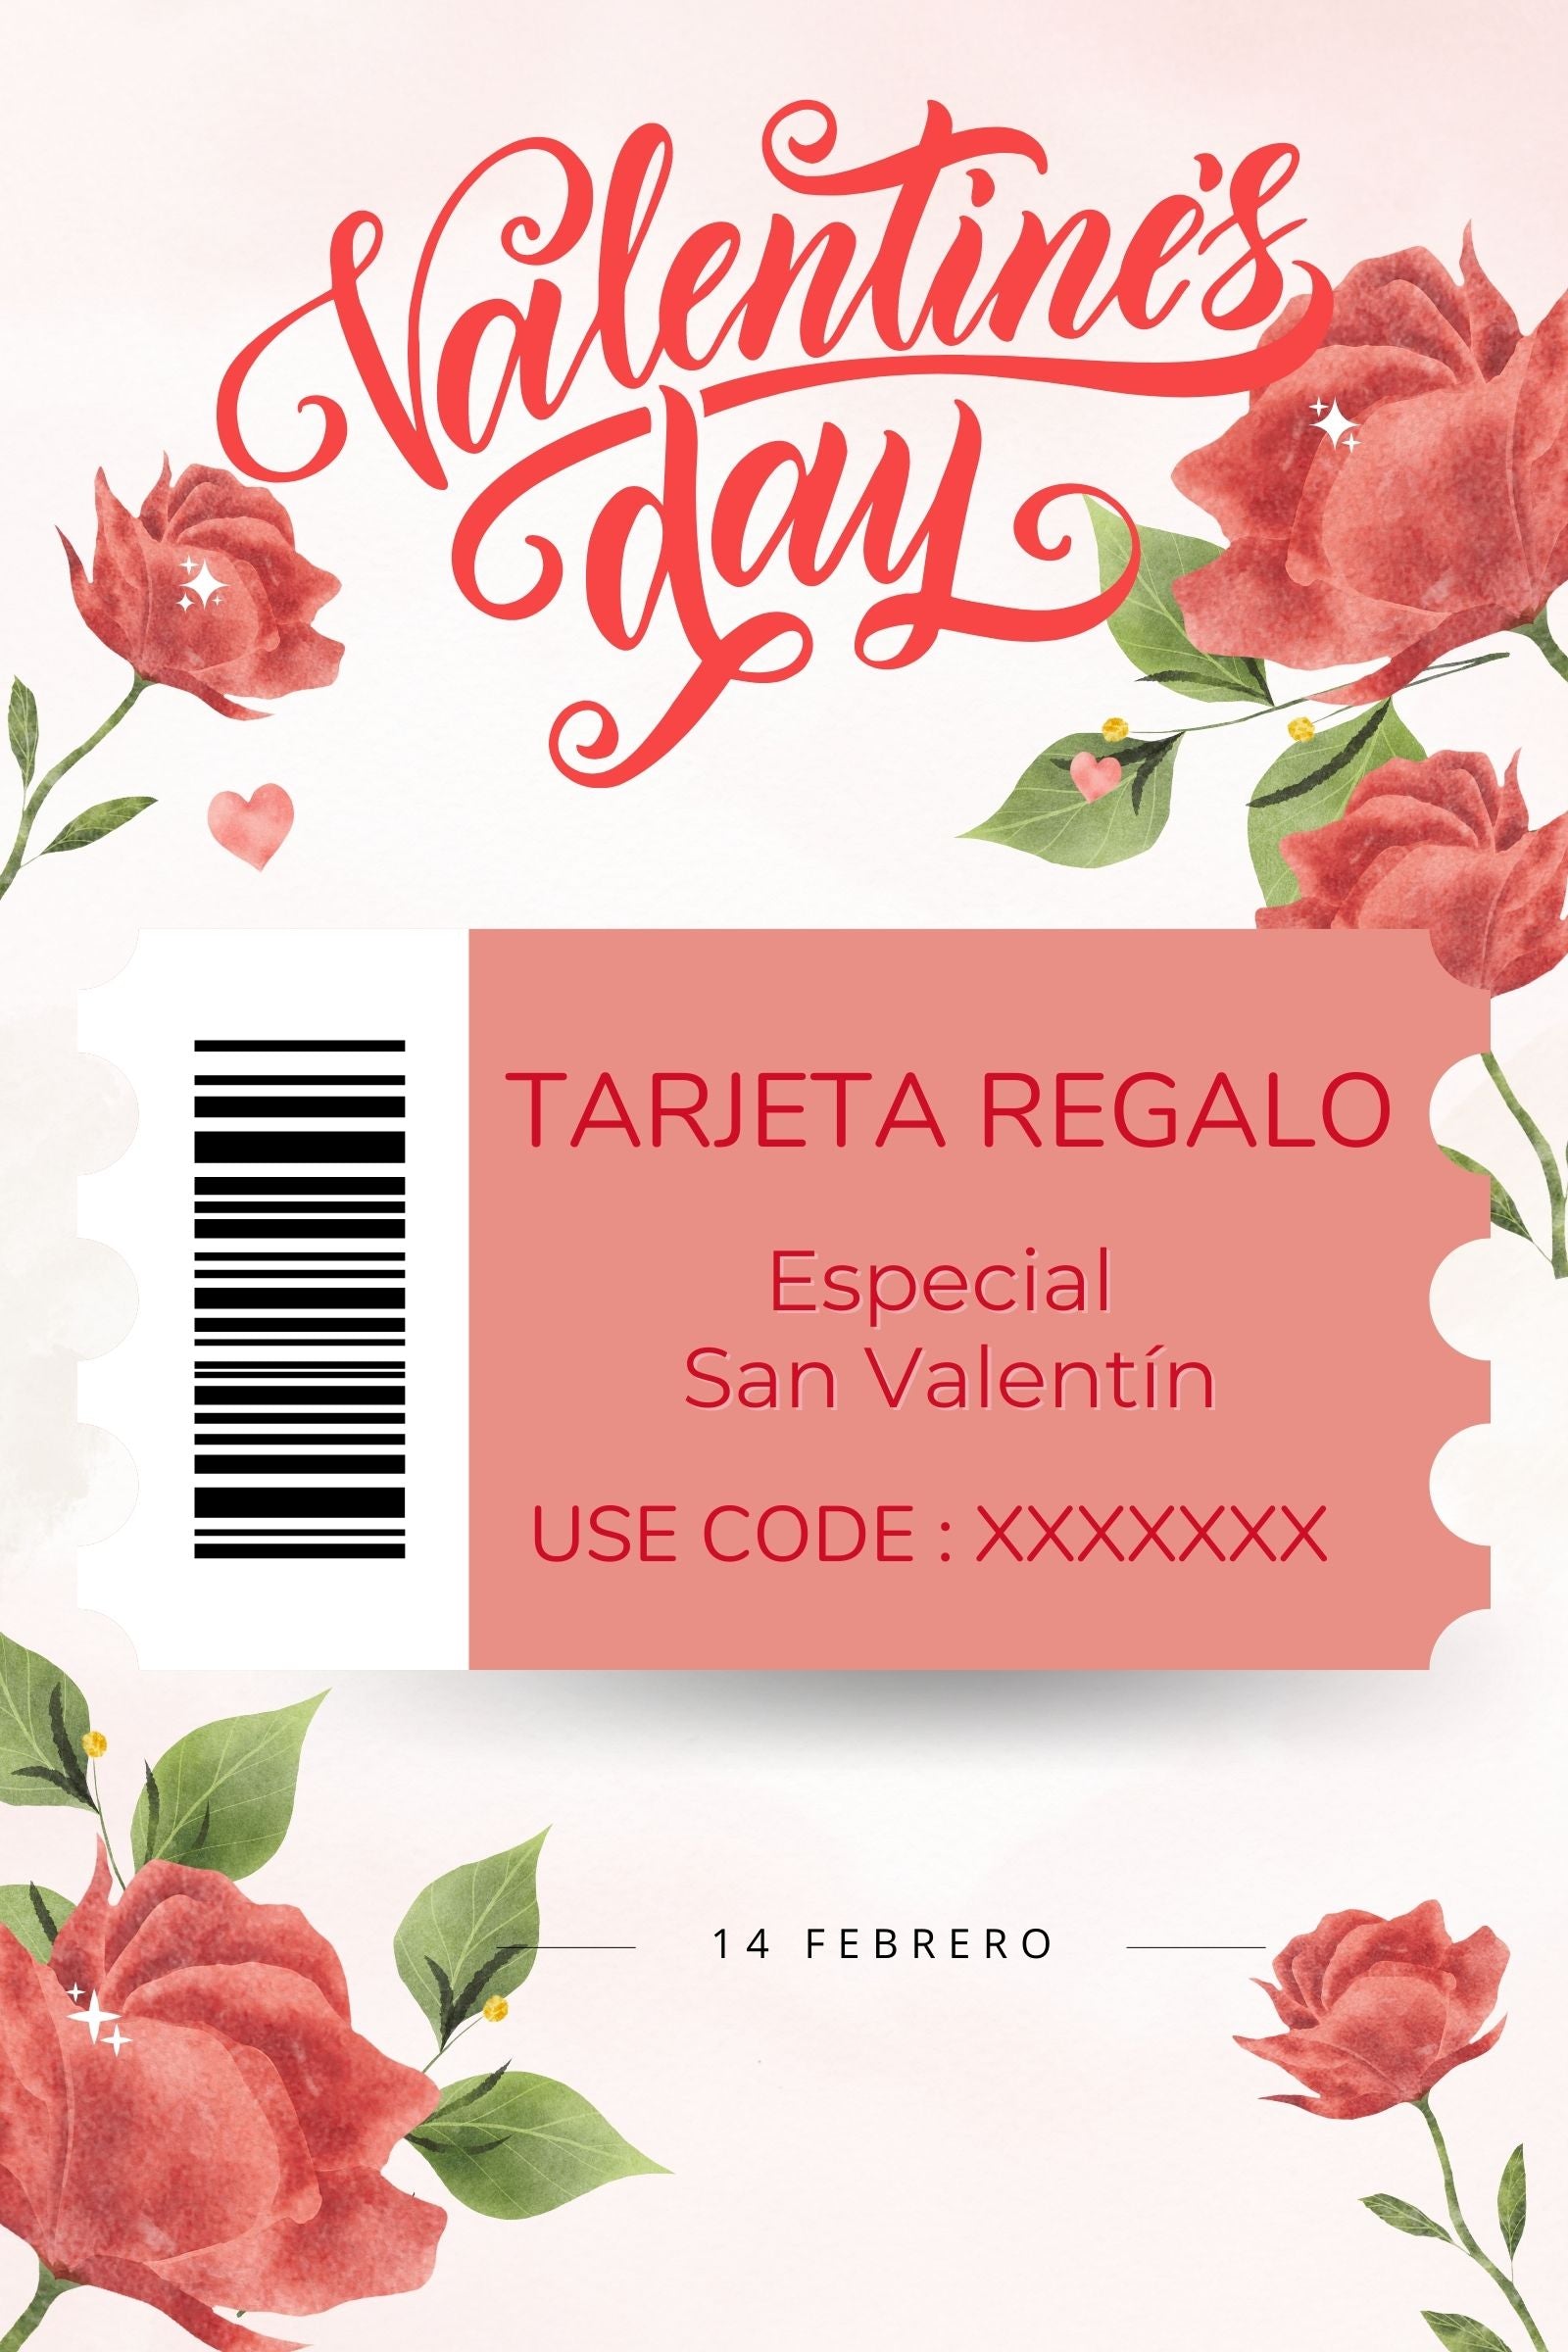 Tarjeta regalo especial San Valentin Lolitas&L